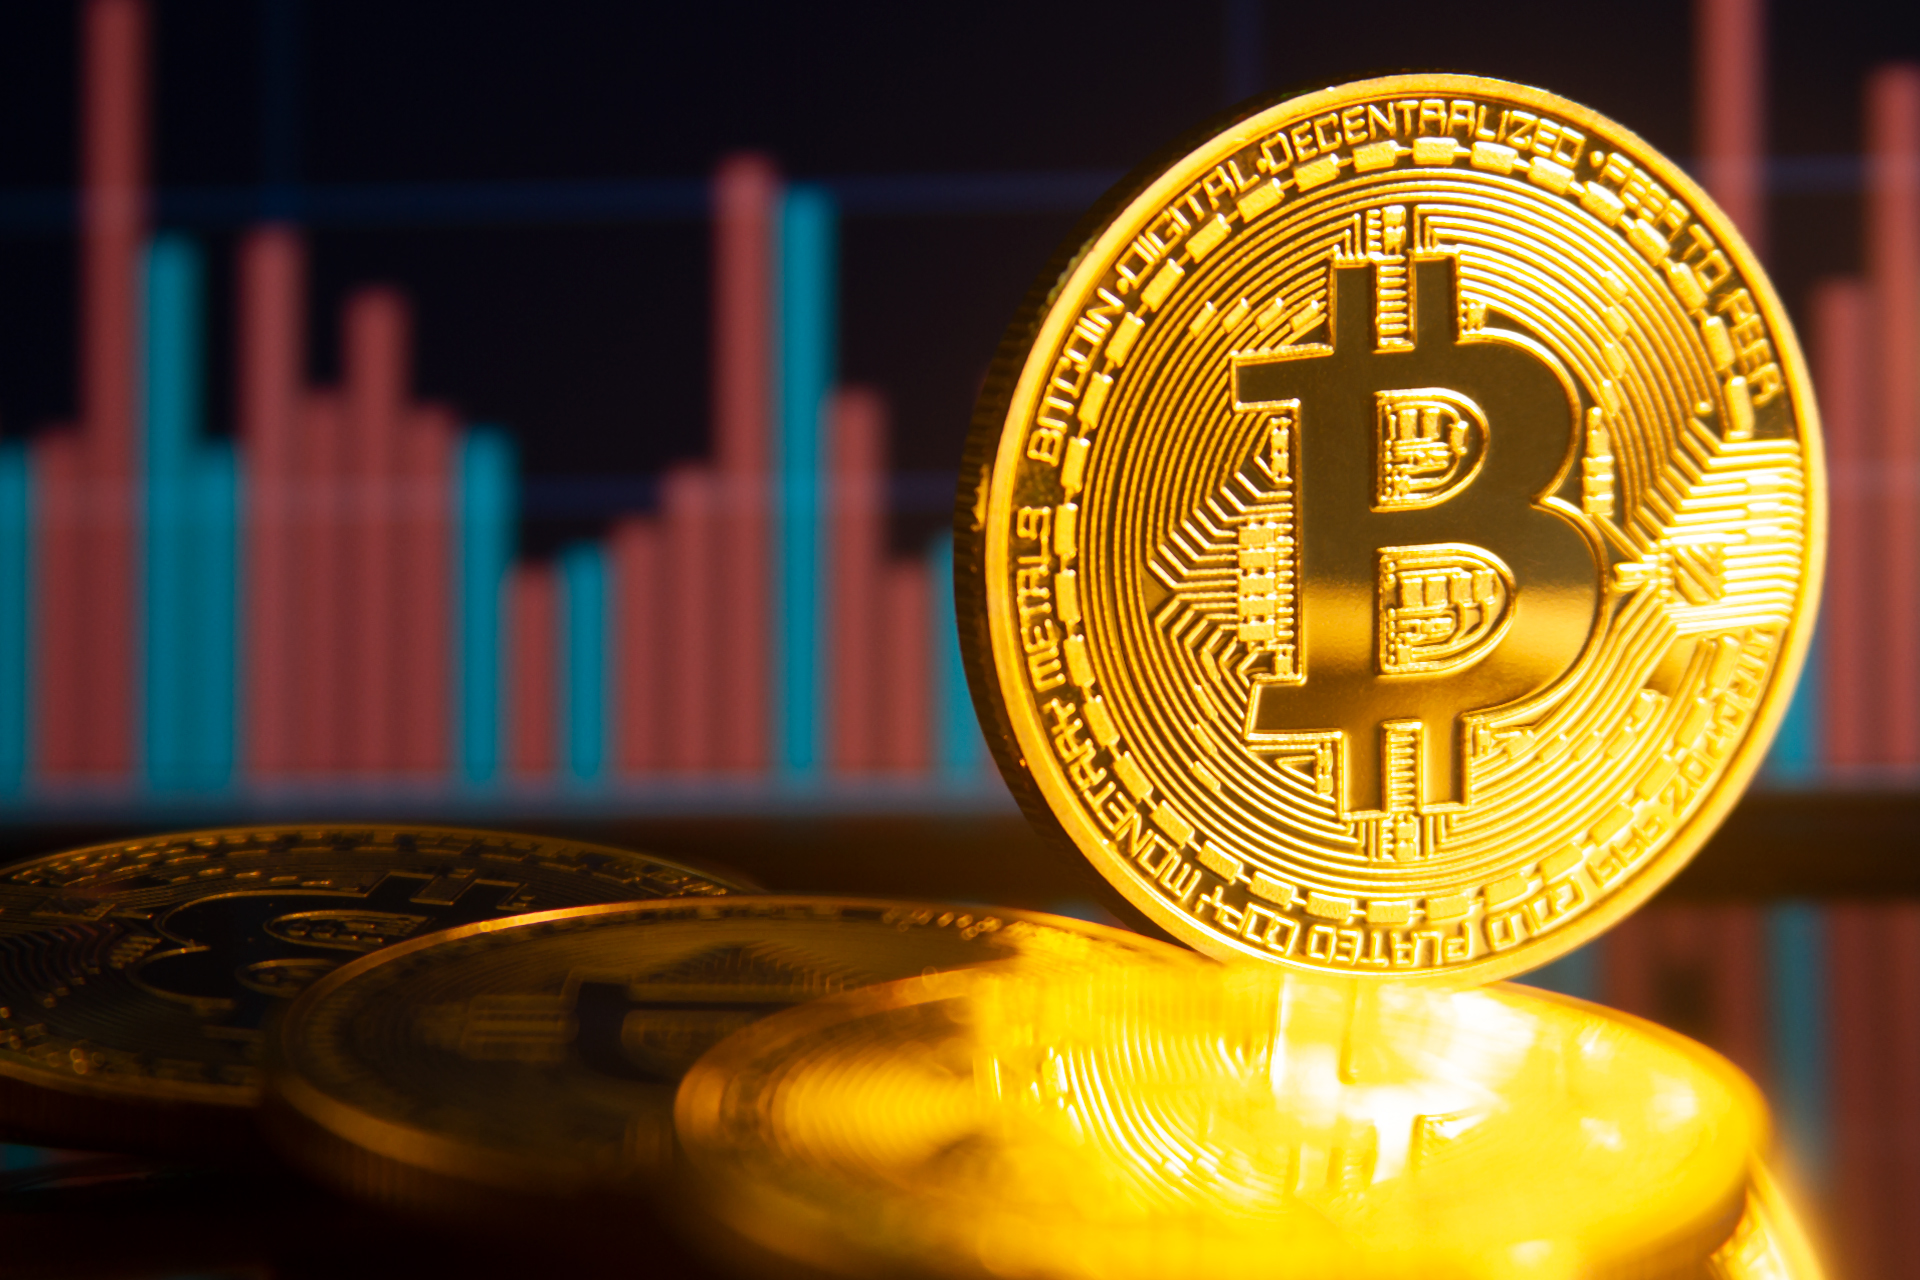 O preço atual de um Bitcoin é de US$ 26.951 com um volume de negociação de US$ 14.7 Bilhões nas últimas 24 horas